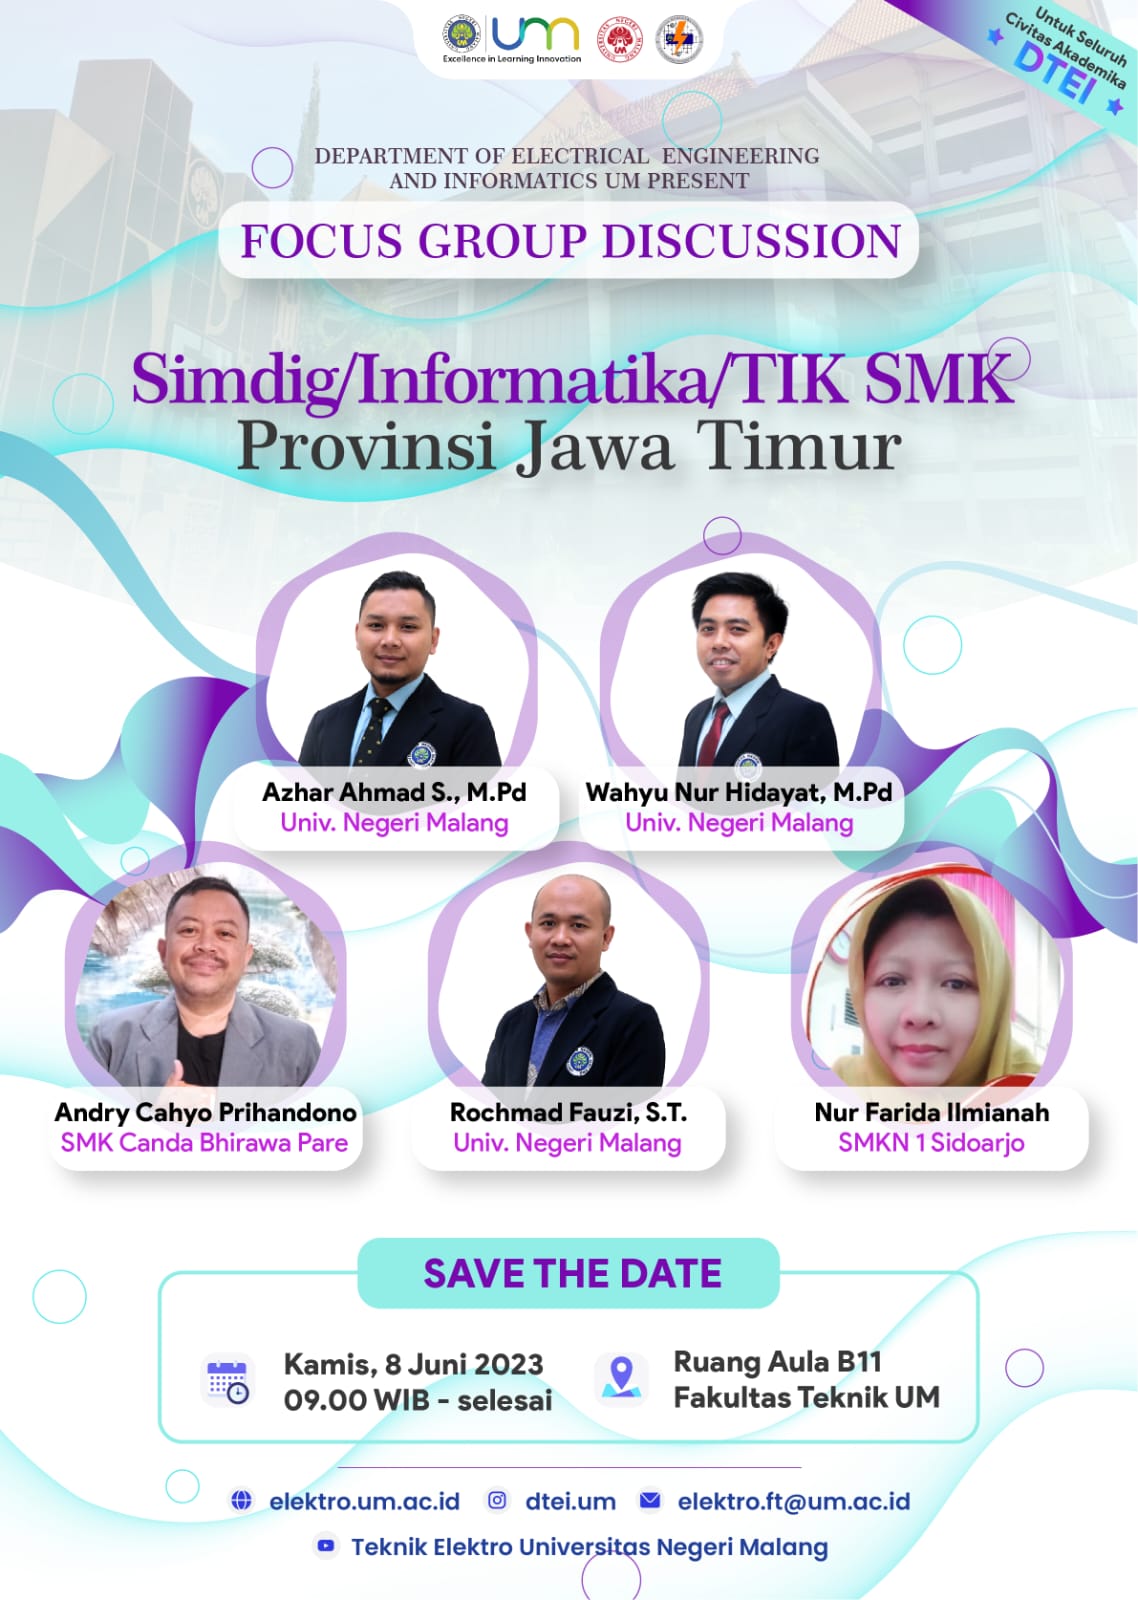 Focus Group Discussion (FGD) “Simdig/Informatika/TIK SMK Provinsi Jawa Timur”